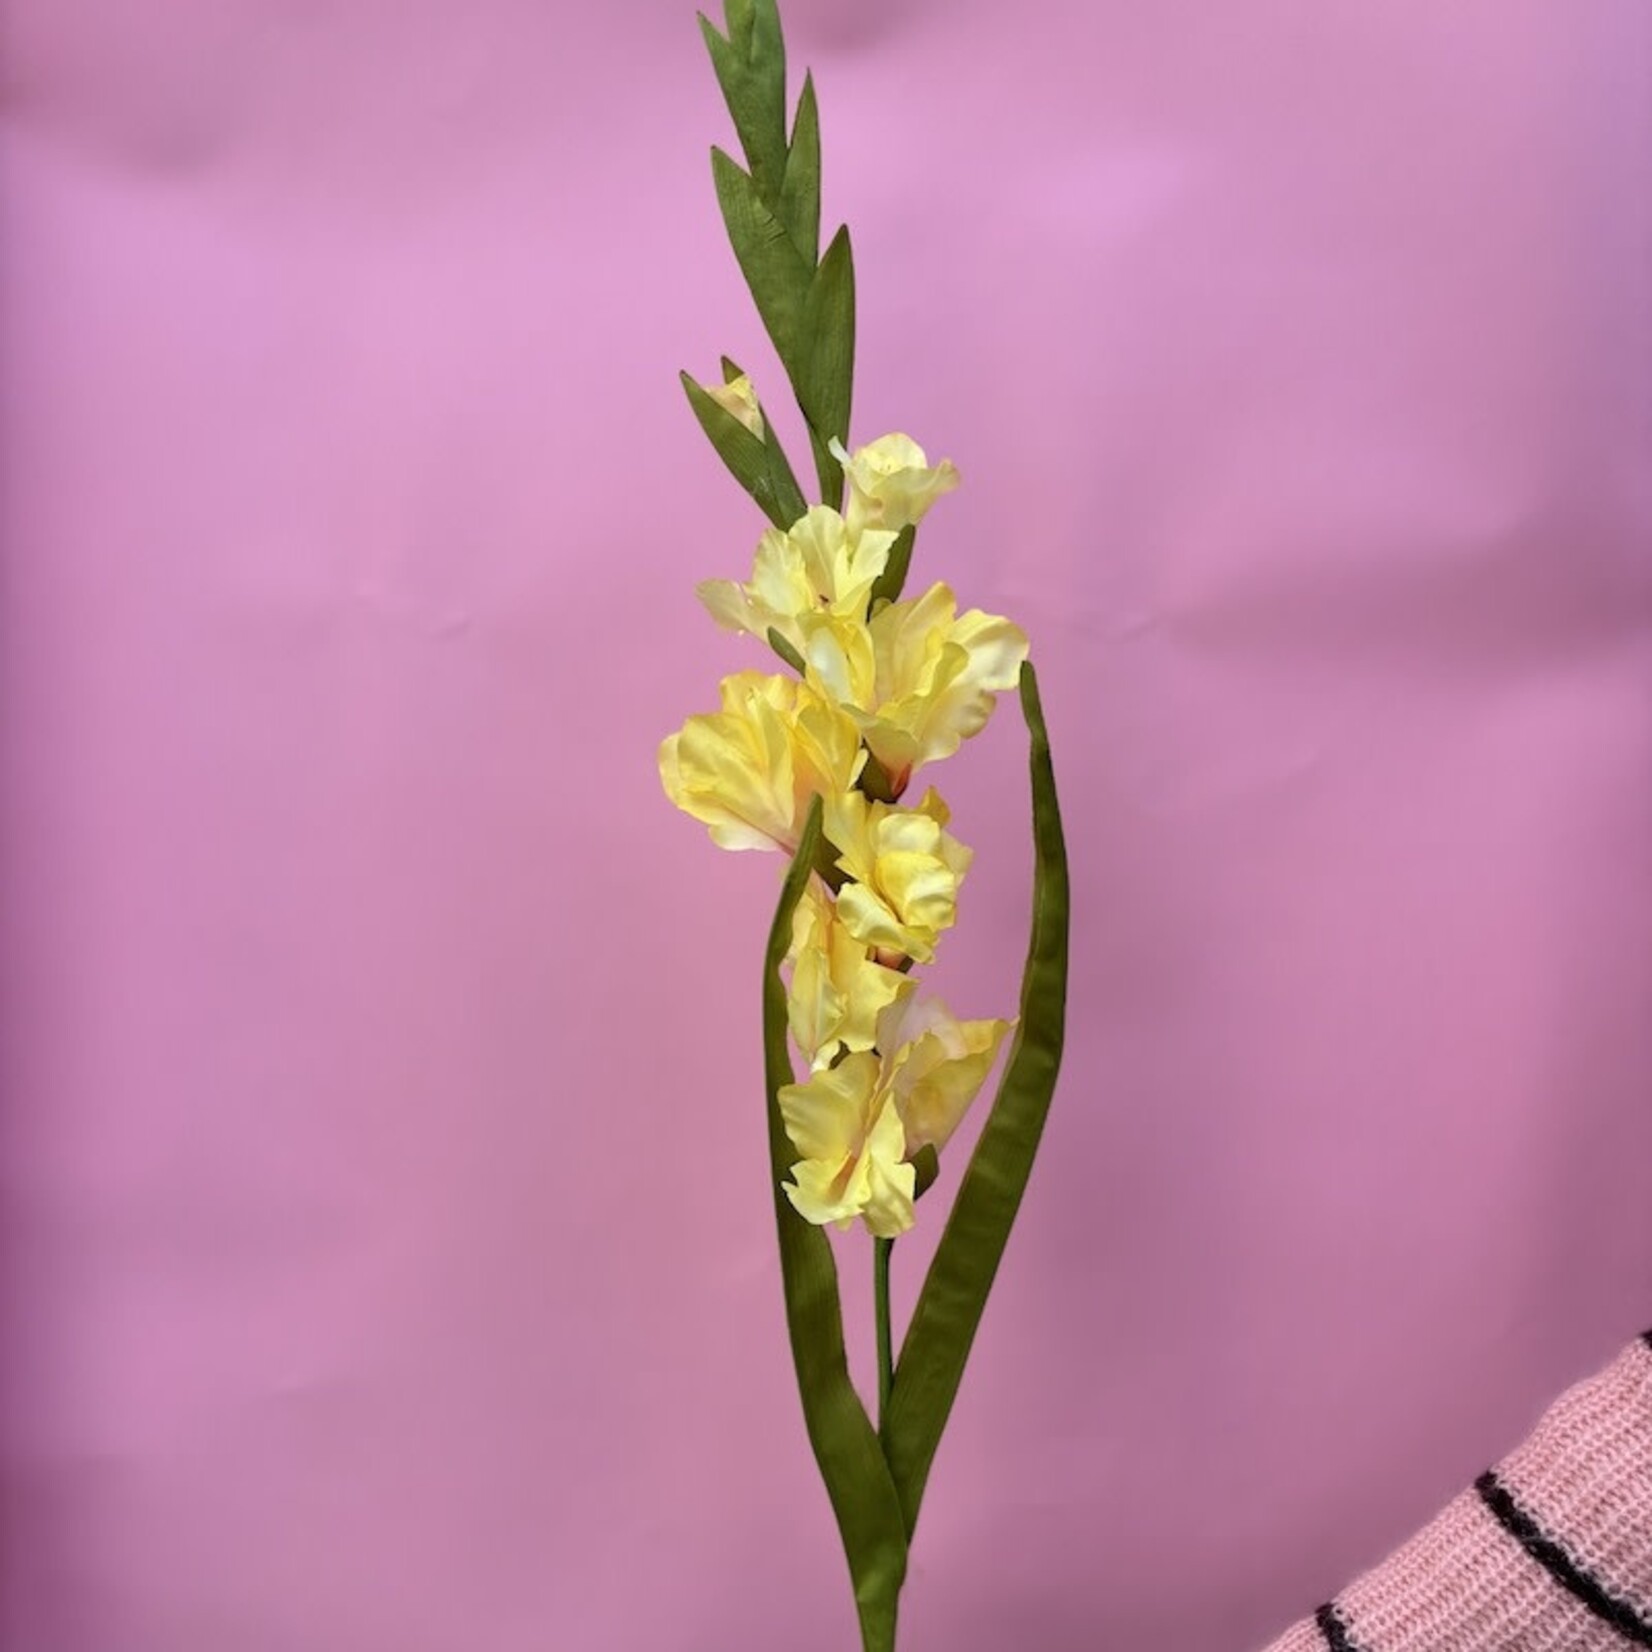 Zijden bloem - Gladiolus geel